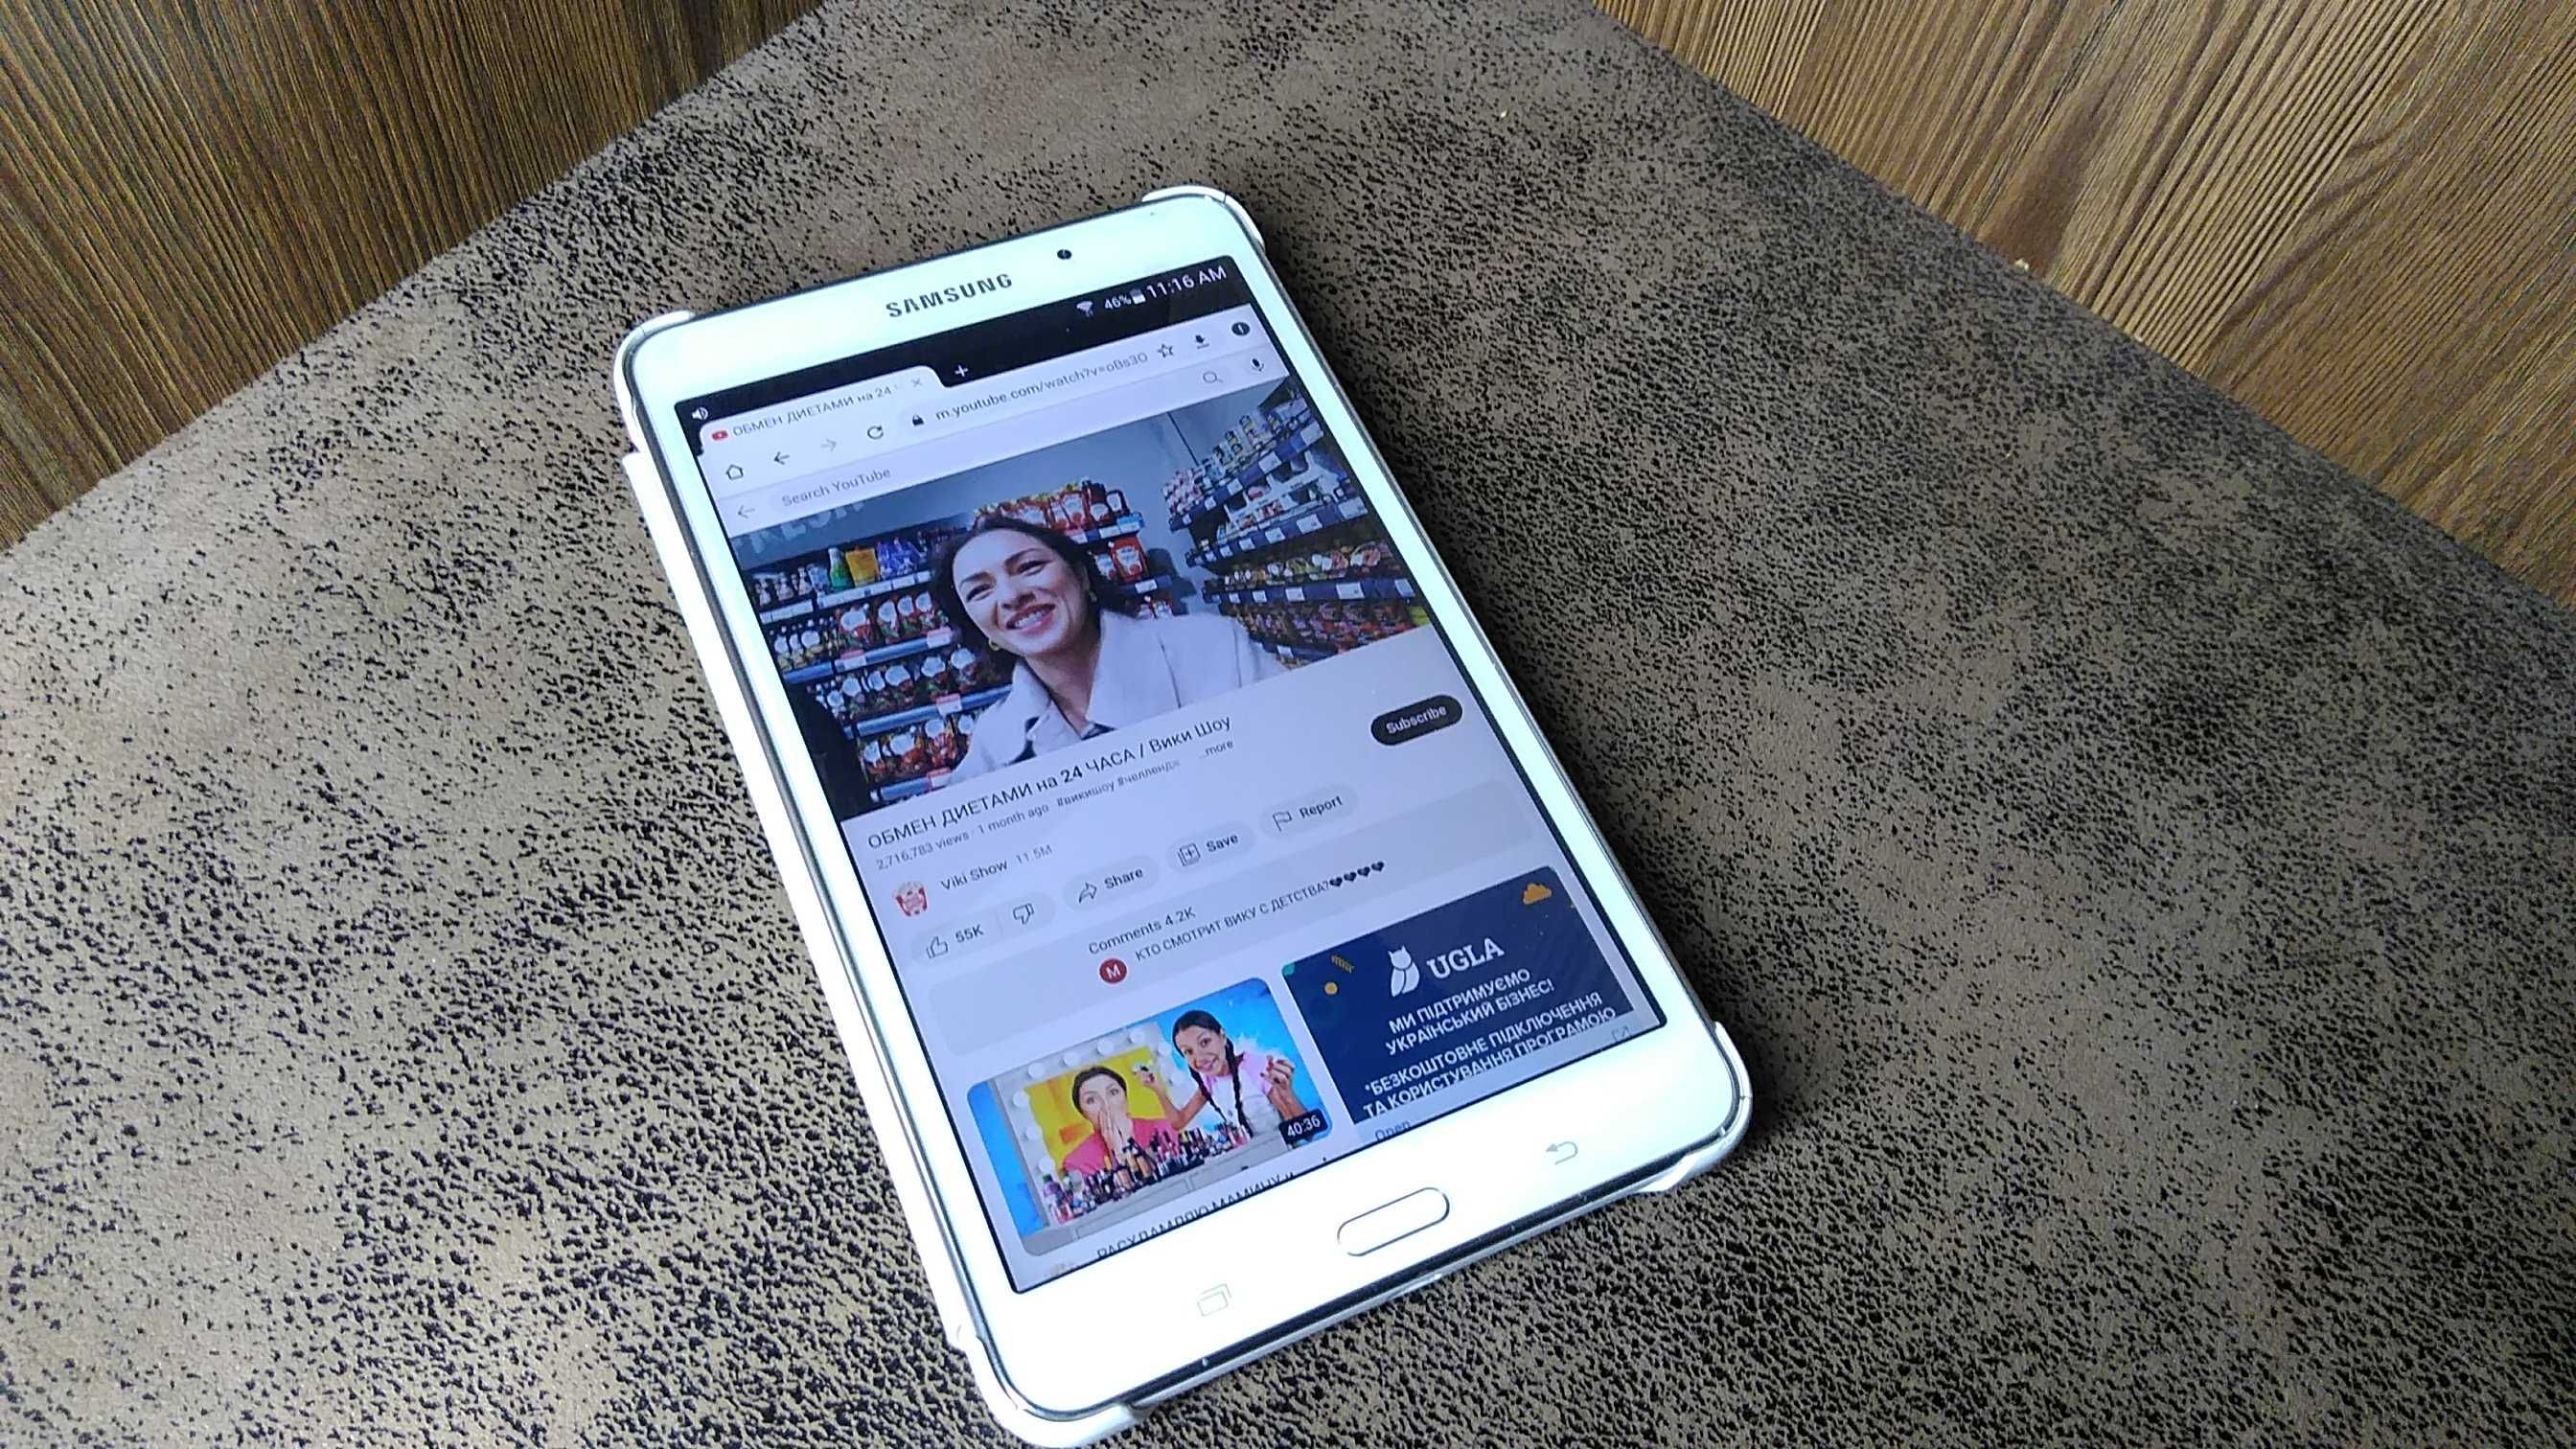 Samsung Galaxy Tab4 -4 ядерний як новий